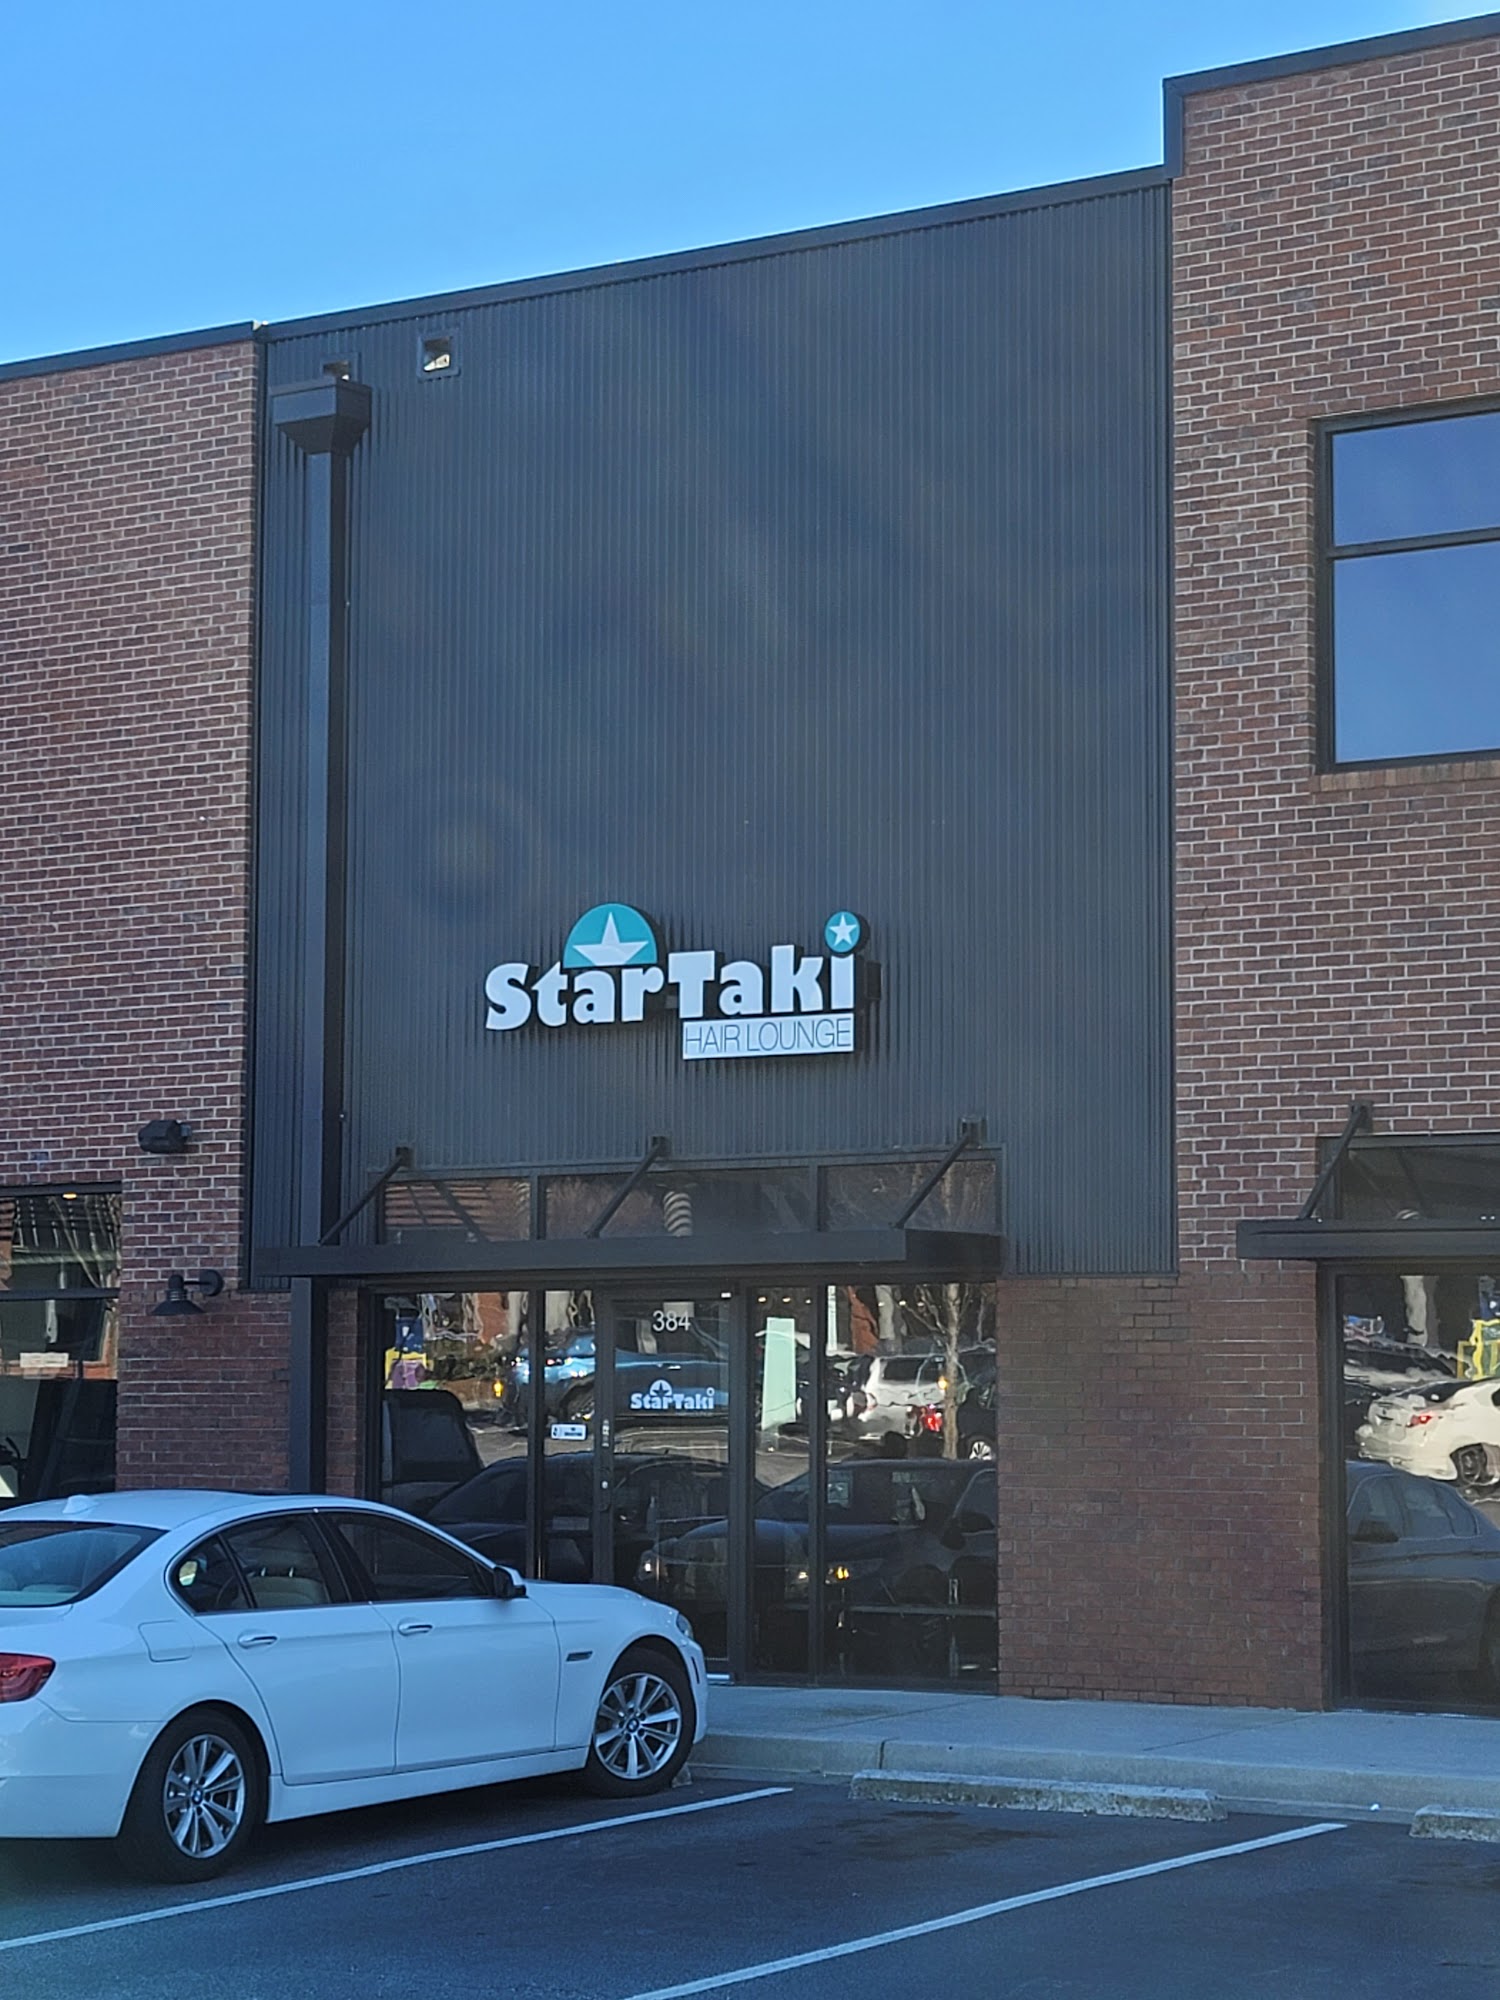 Star Taki Hair Lounge